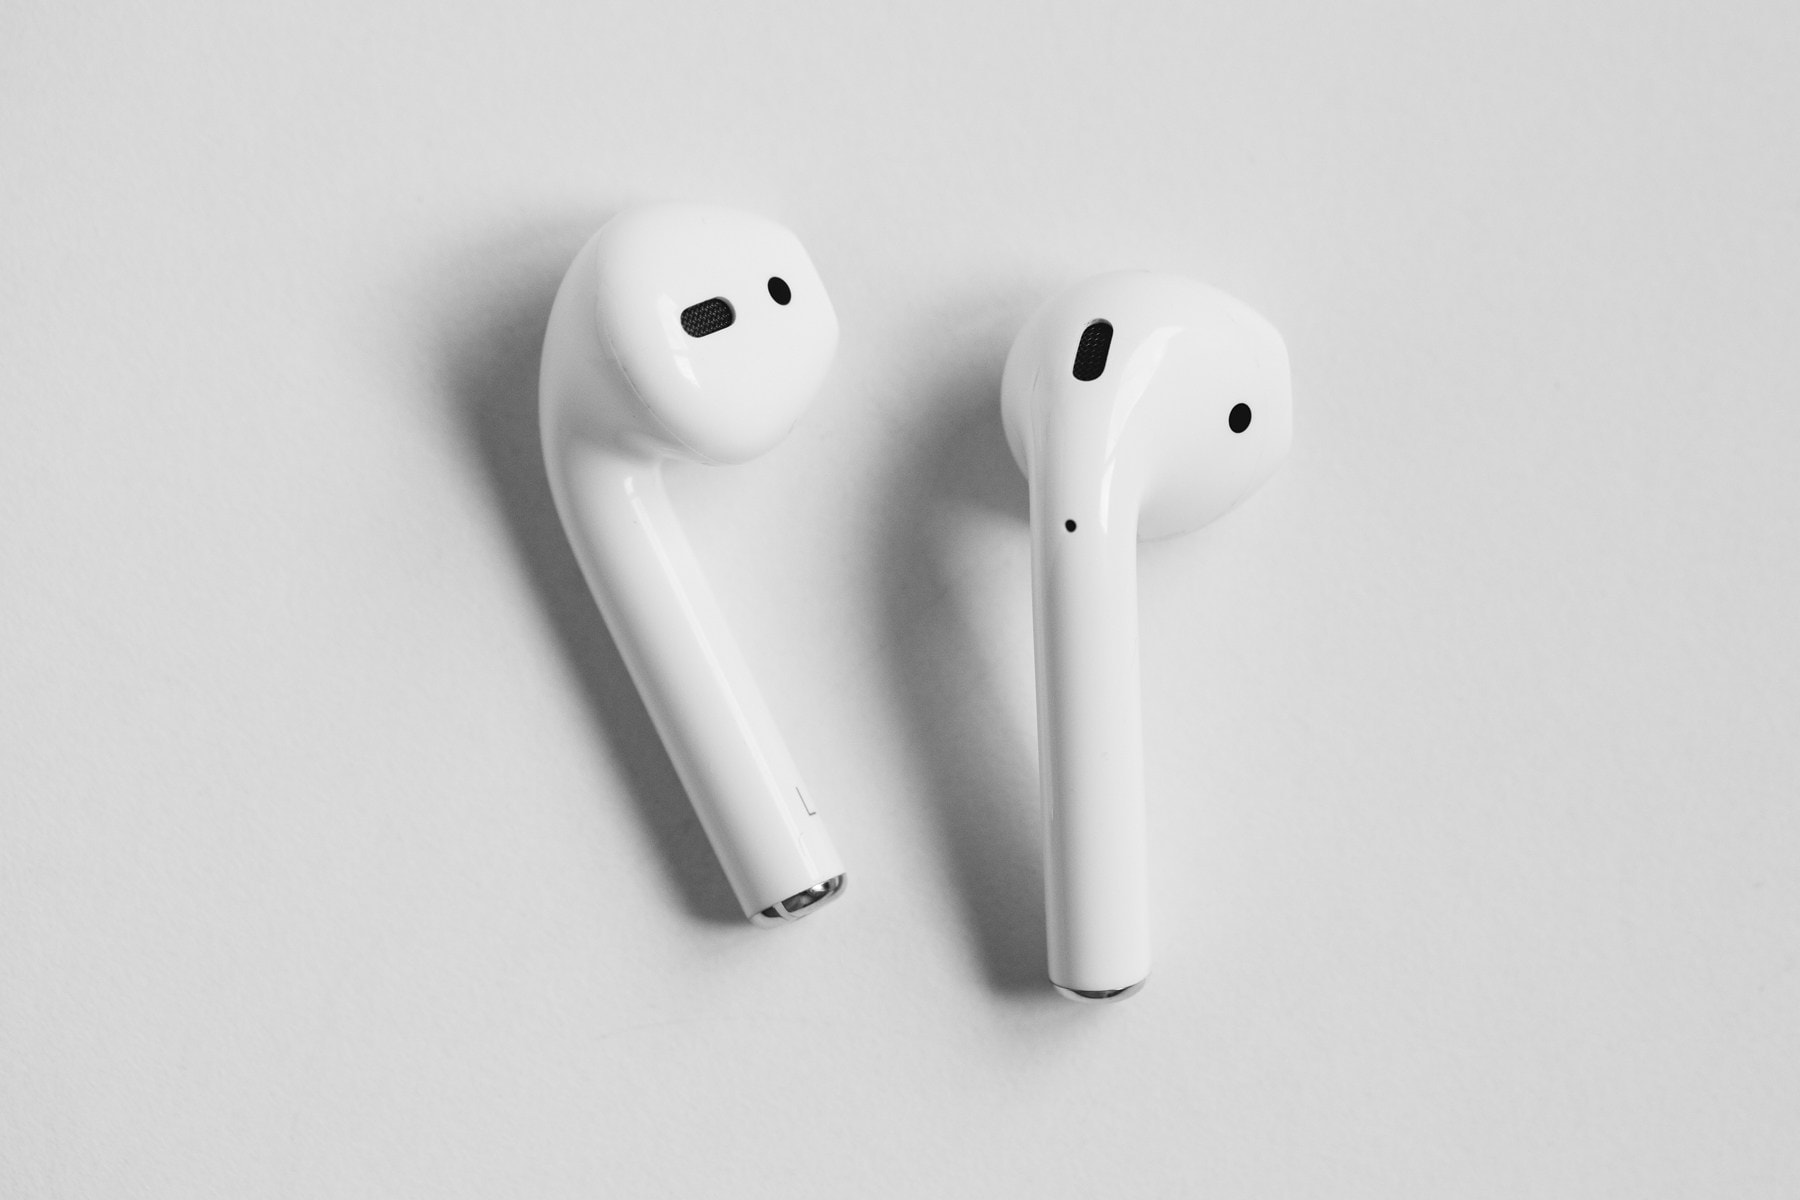 New Apple Earphones Speakers Rumors